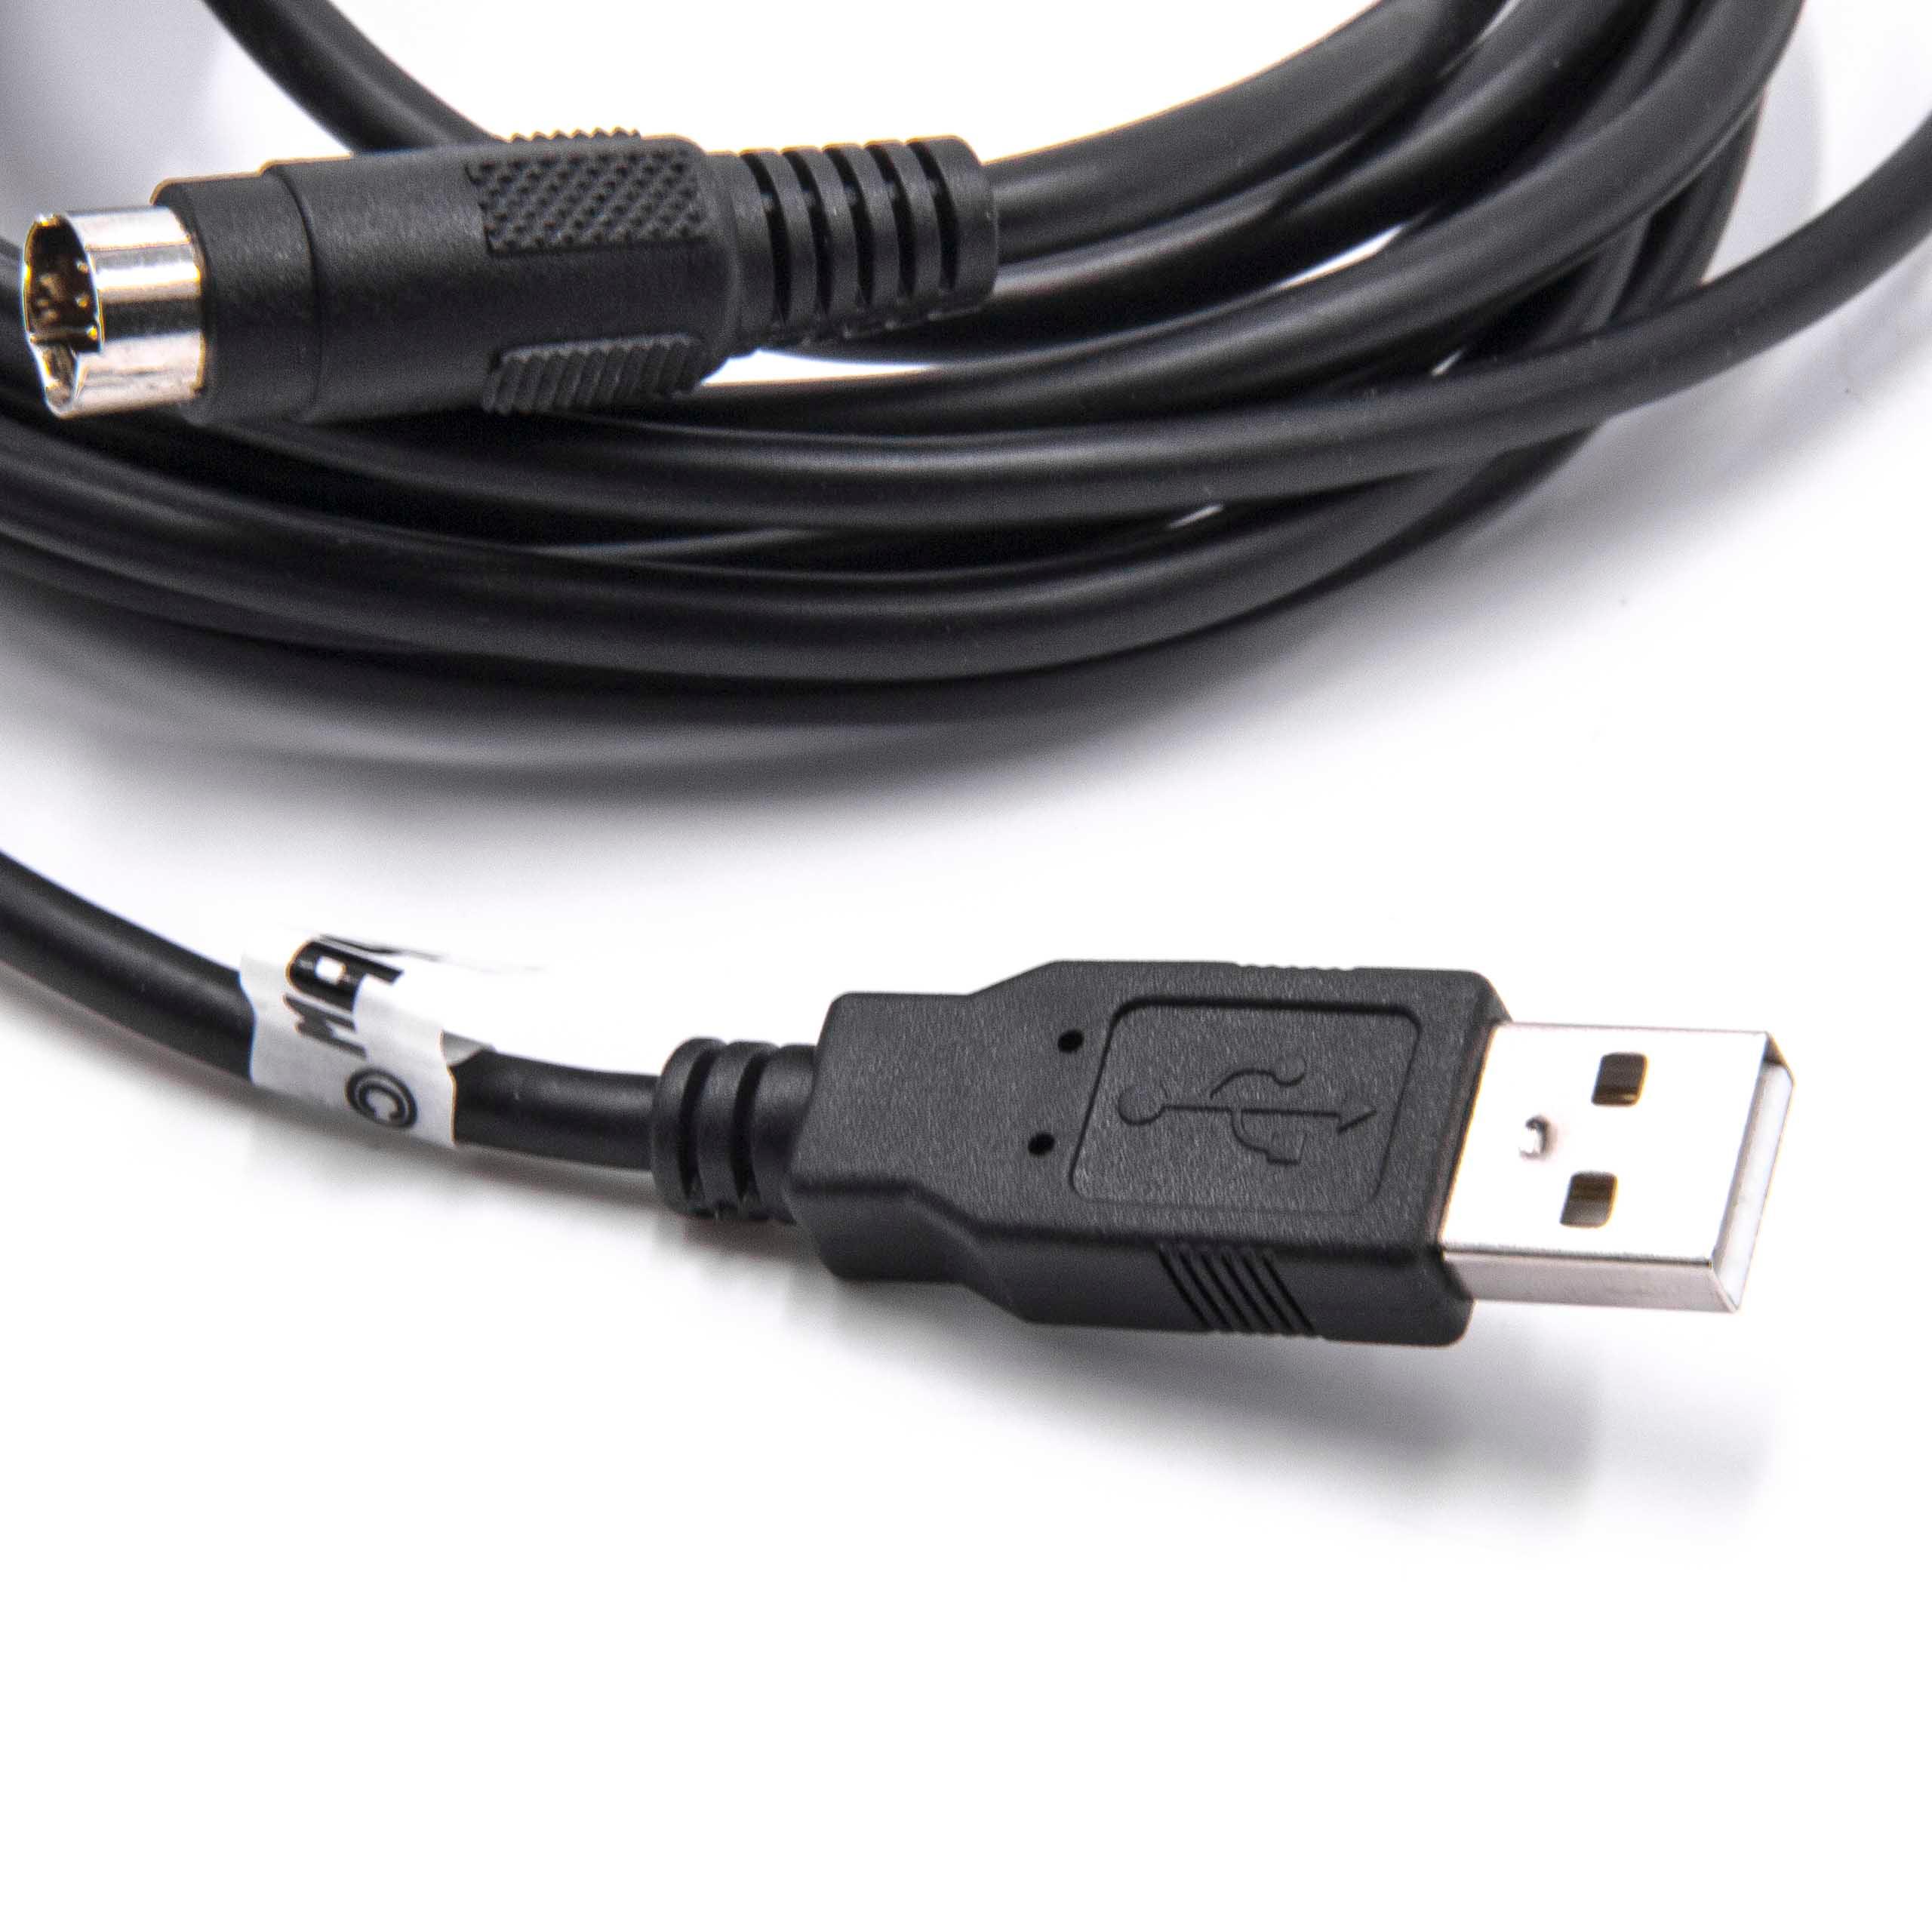 Programmierkabel als Ersatz für USB-1761-CBL-PM02 für Allen Bradley Funkgerät